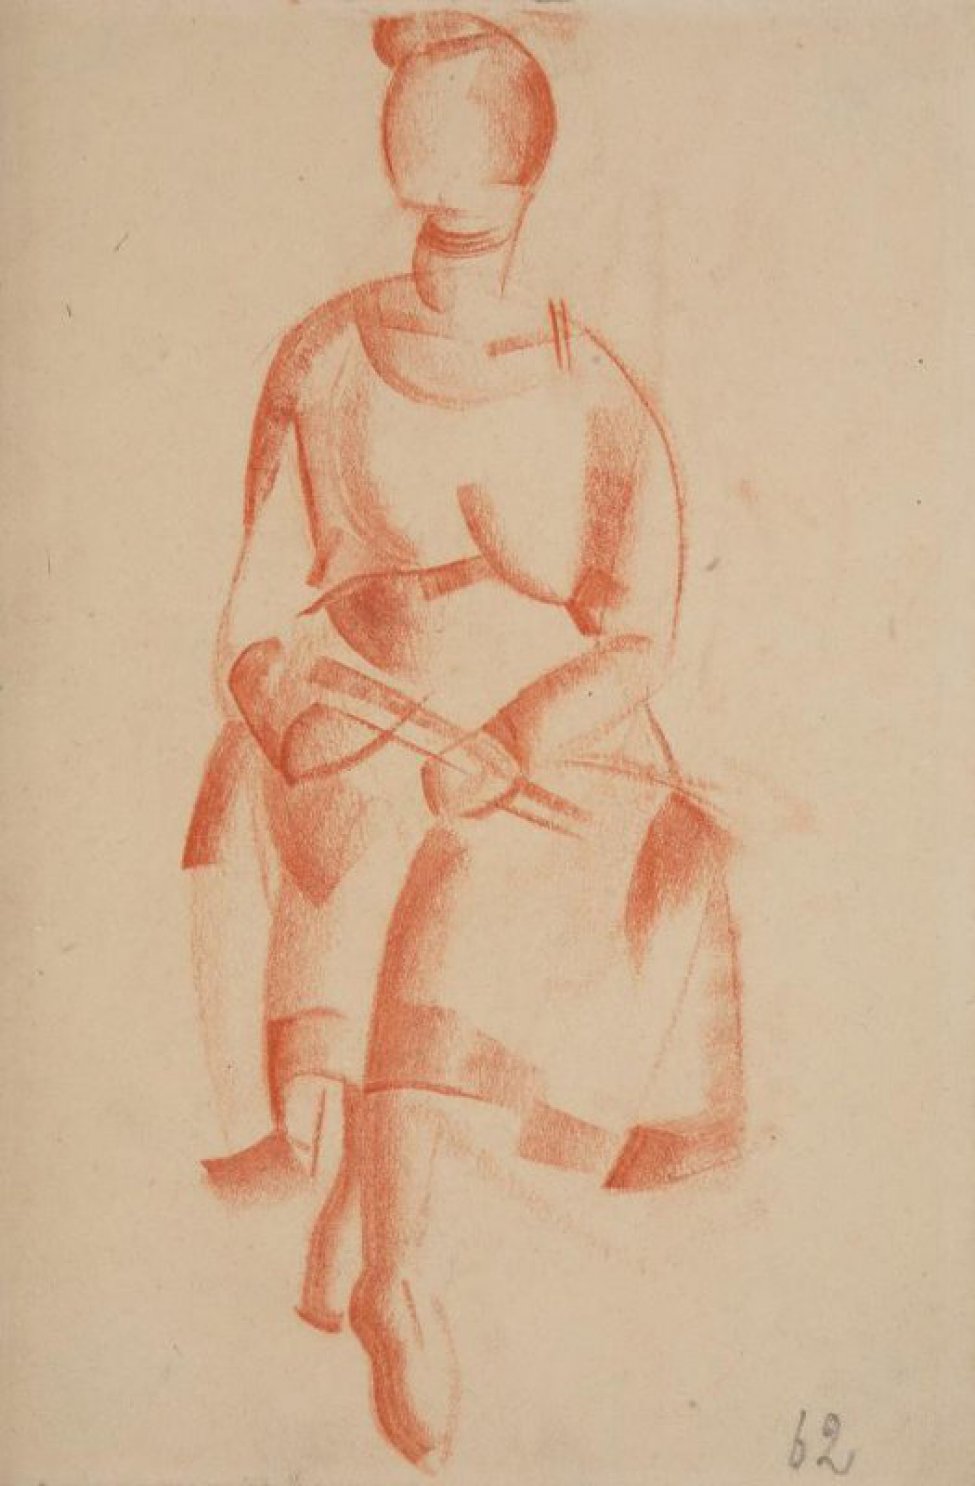 Изображена сидящая молодая женщина; голова в повороте влево. руки лежат на коленях; ноги заложены одна на другую.